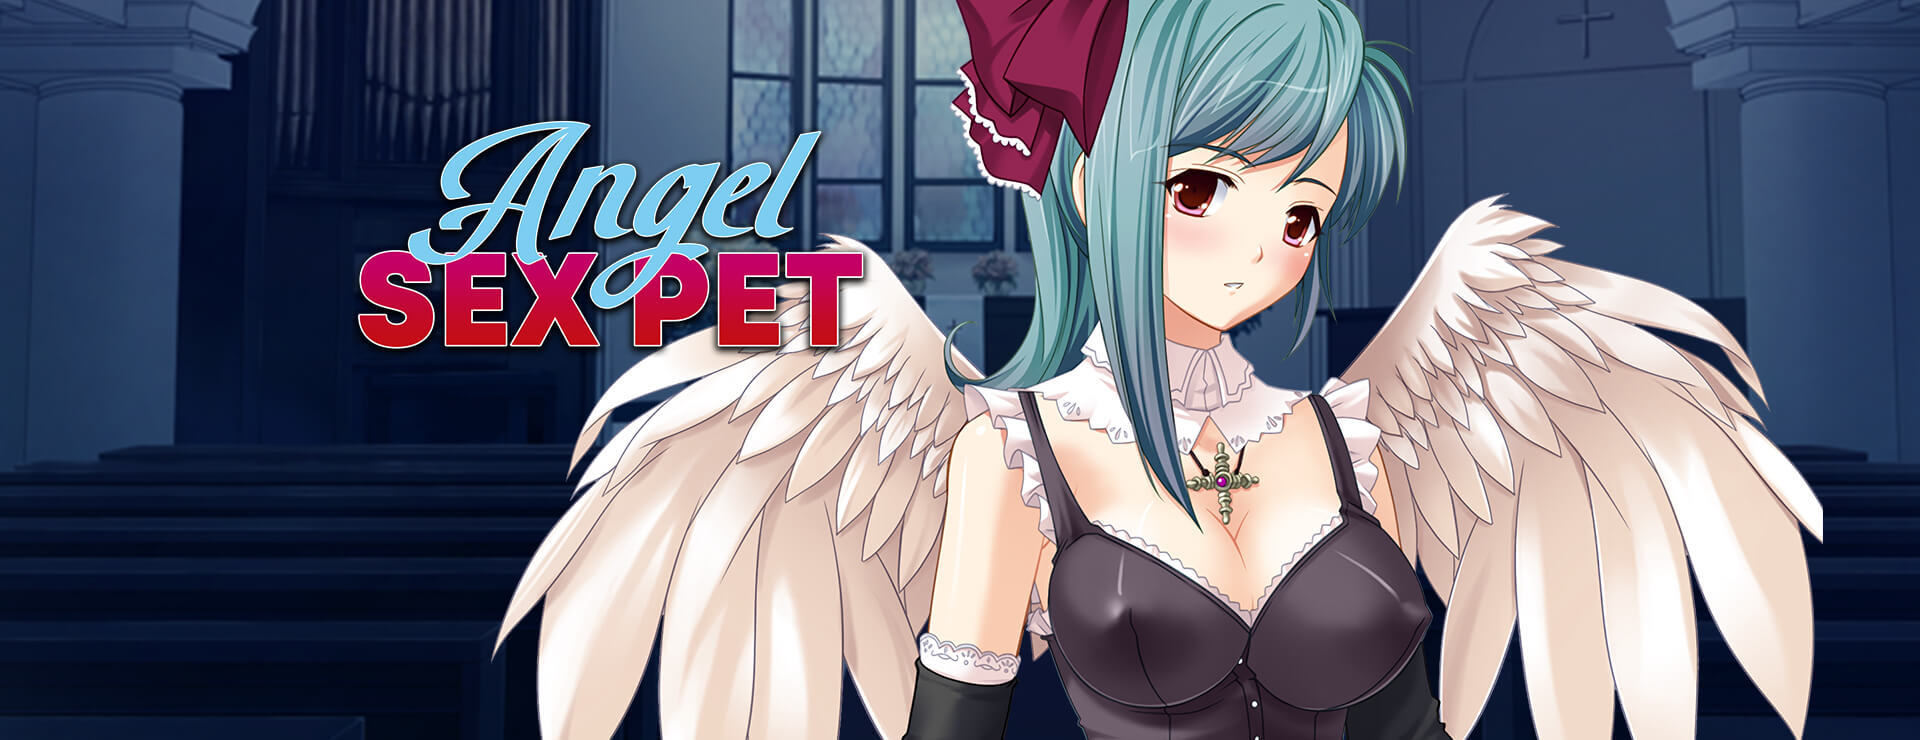 Angel Sex Pet - Novela Visual Juego